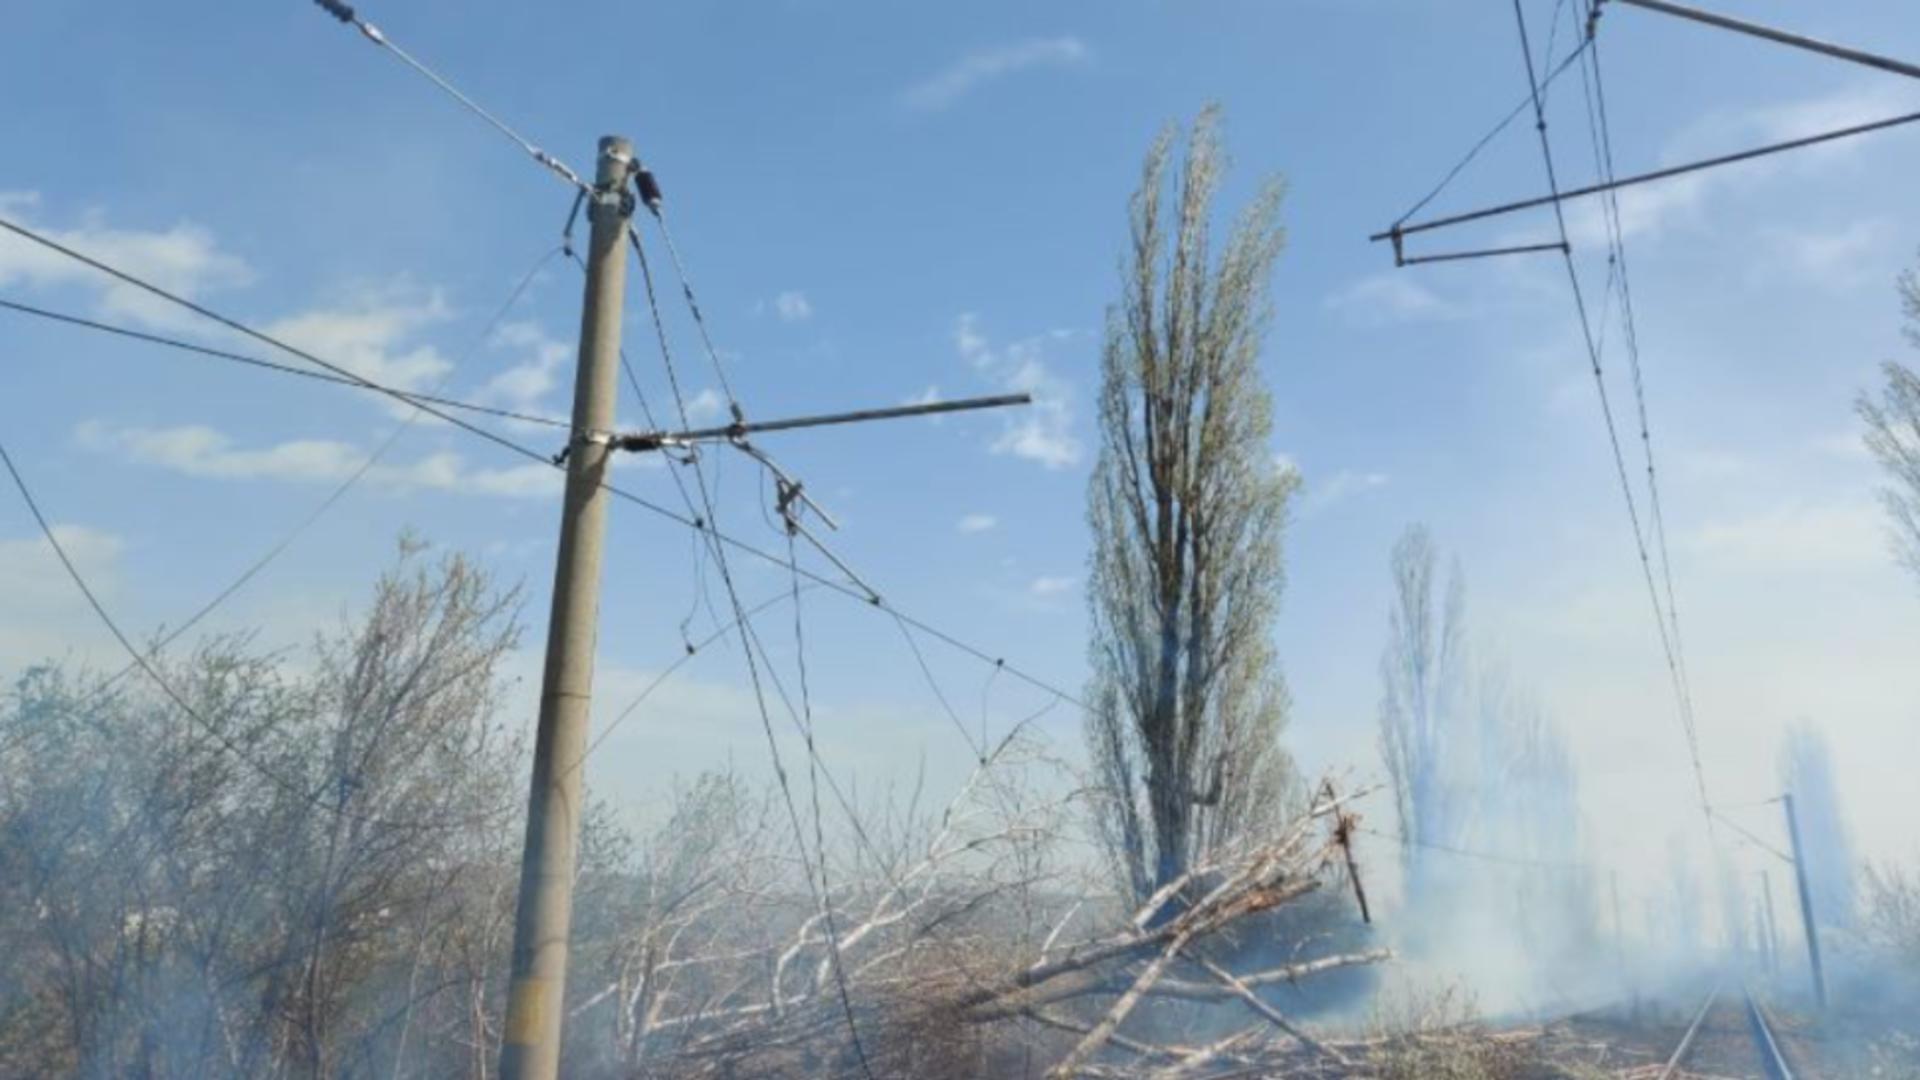 Circulaţie feroviară, oprită temporar între Ploieşti Sud şi Buzău din cauza unui copac căzut pe linie și a unui incendiu izbucnit în apropiere/ Captură foto